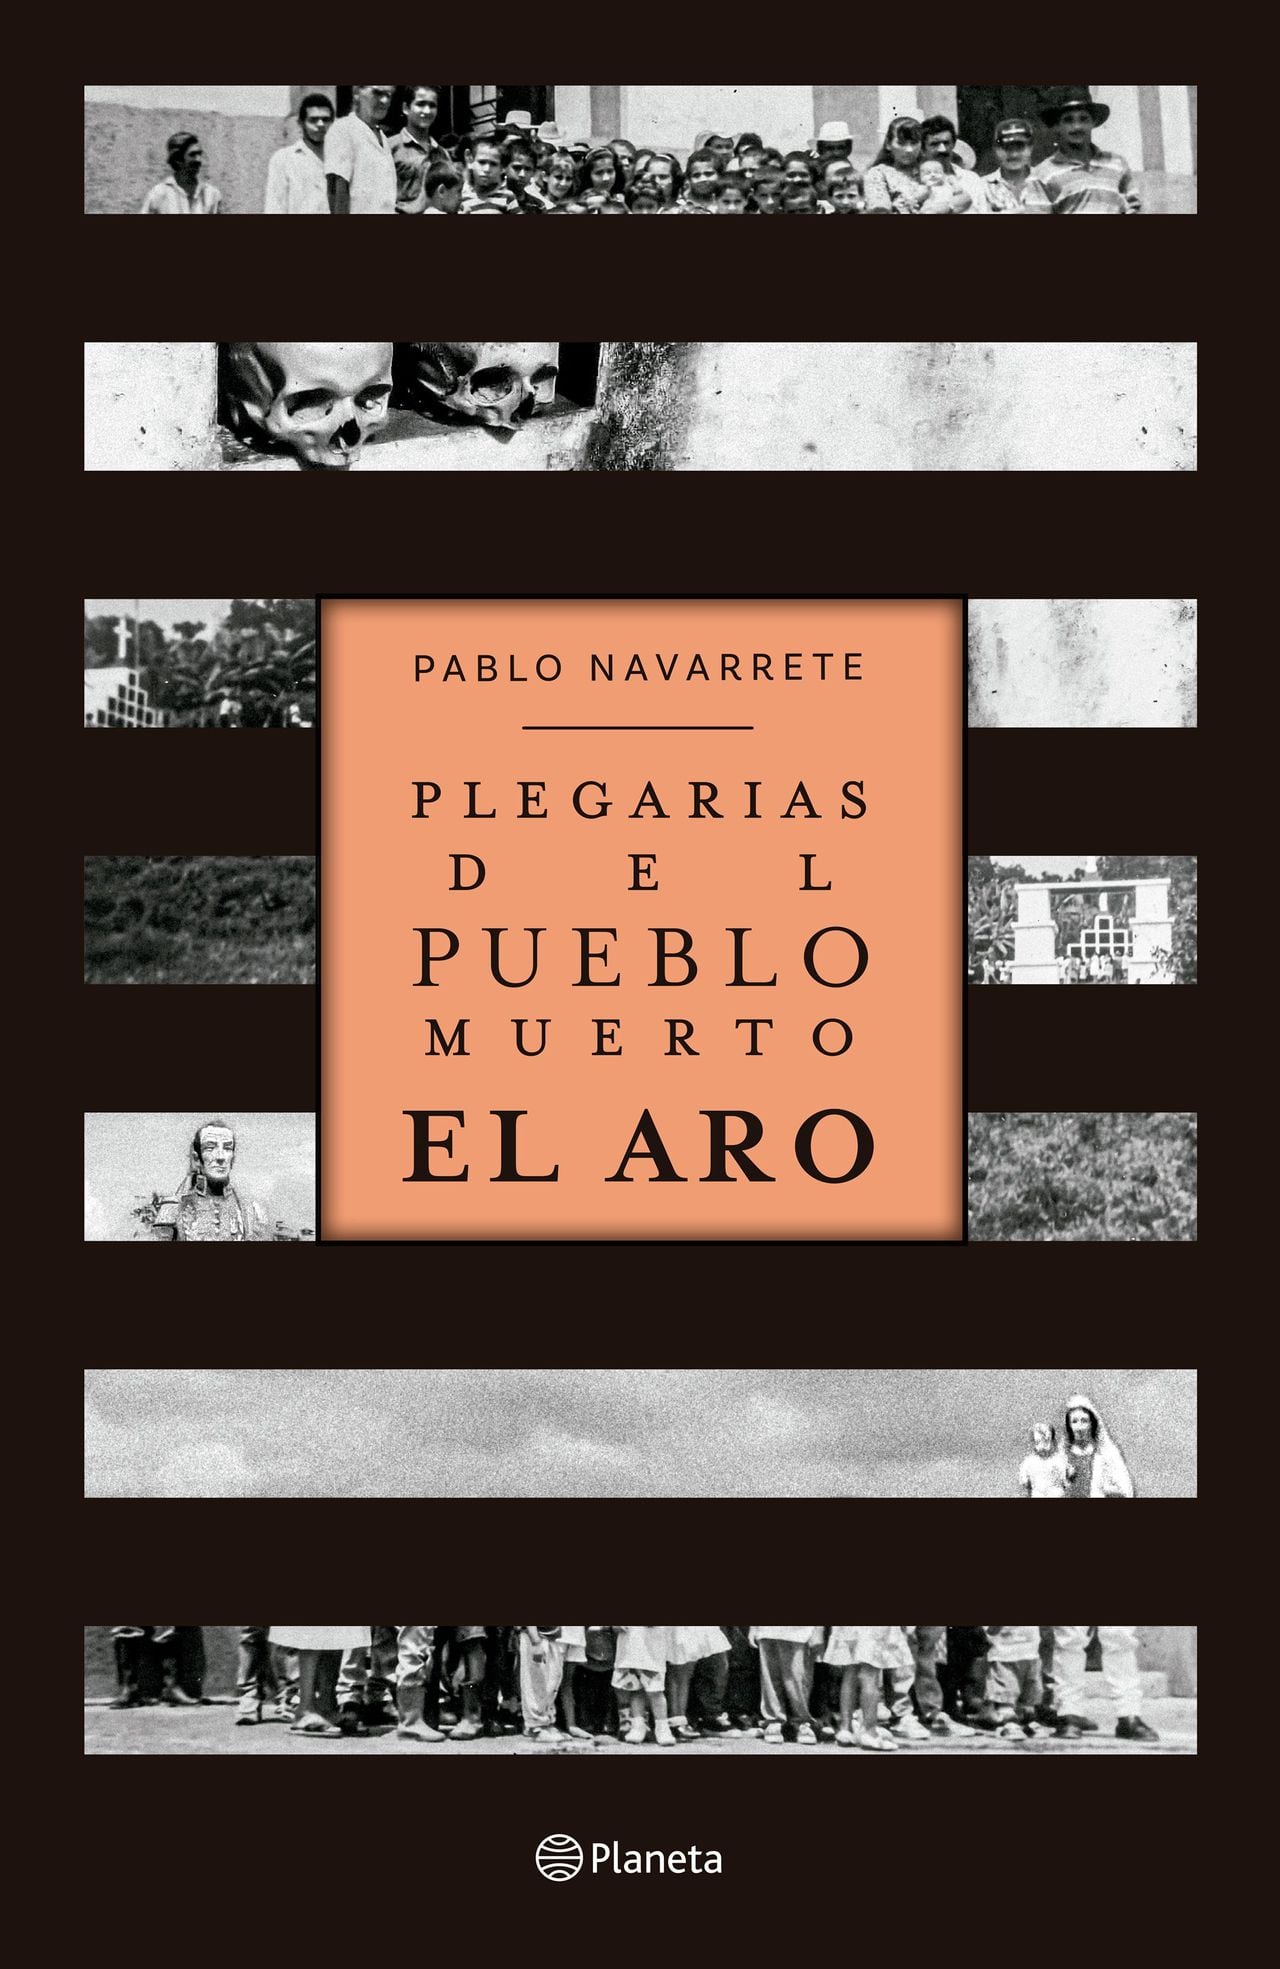 Plegarias del pueblo muerto: El Aro
Pablo Navarrete